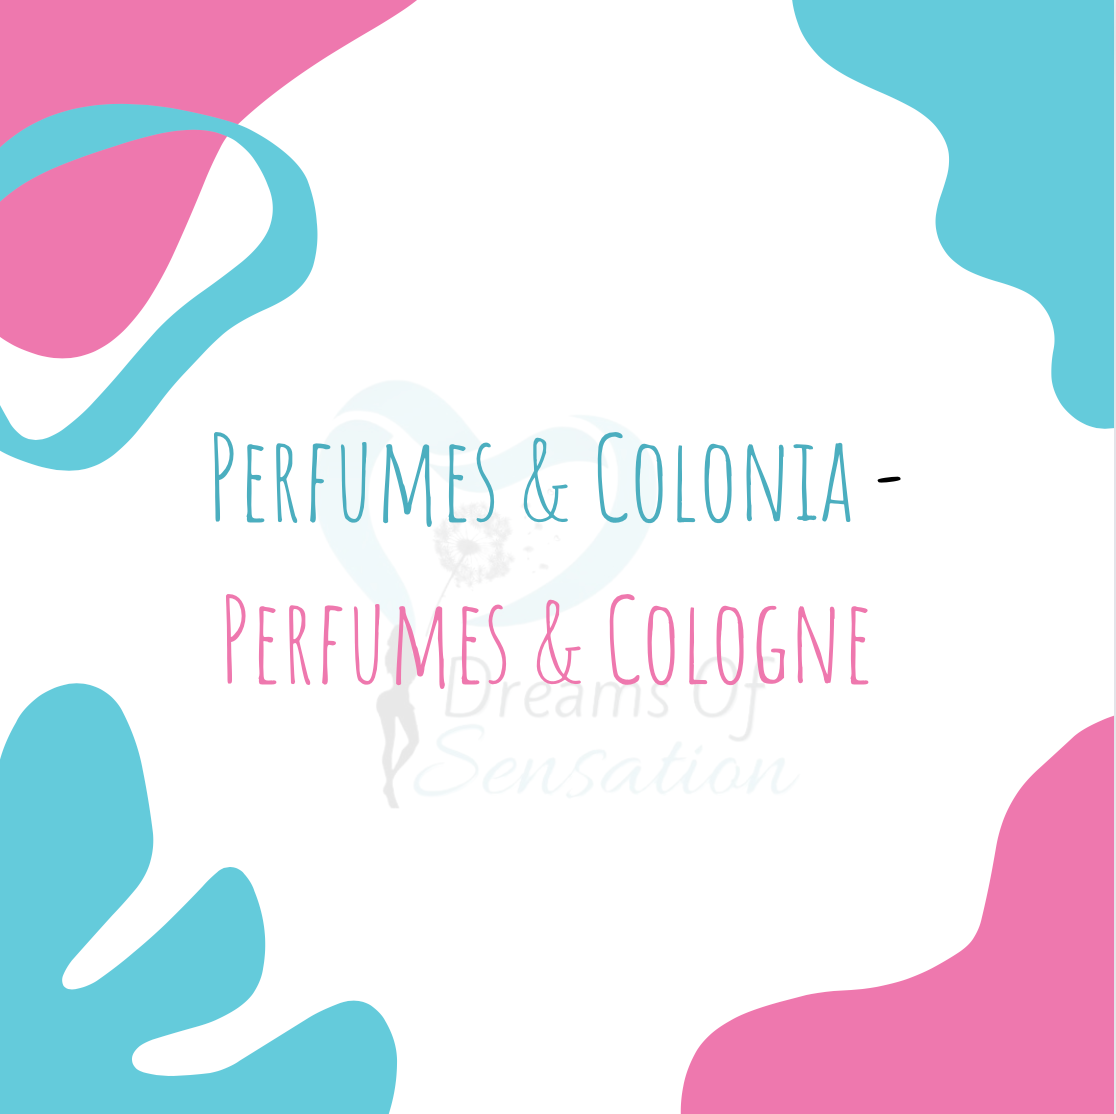 Perfumes & Colonia - Perfume & Cologne